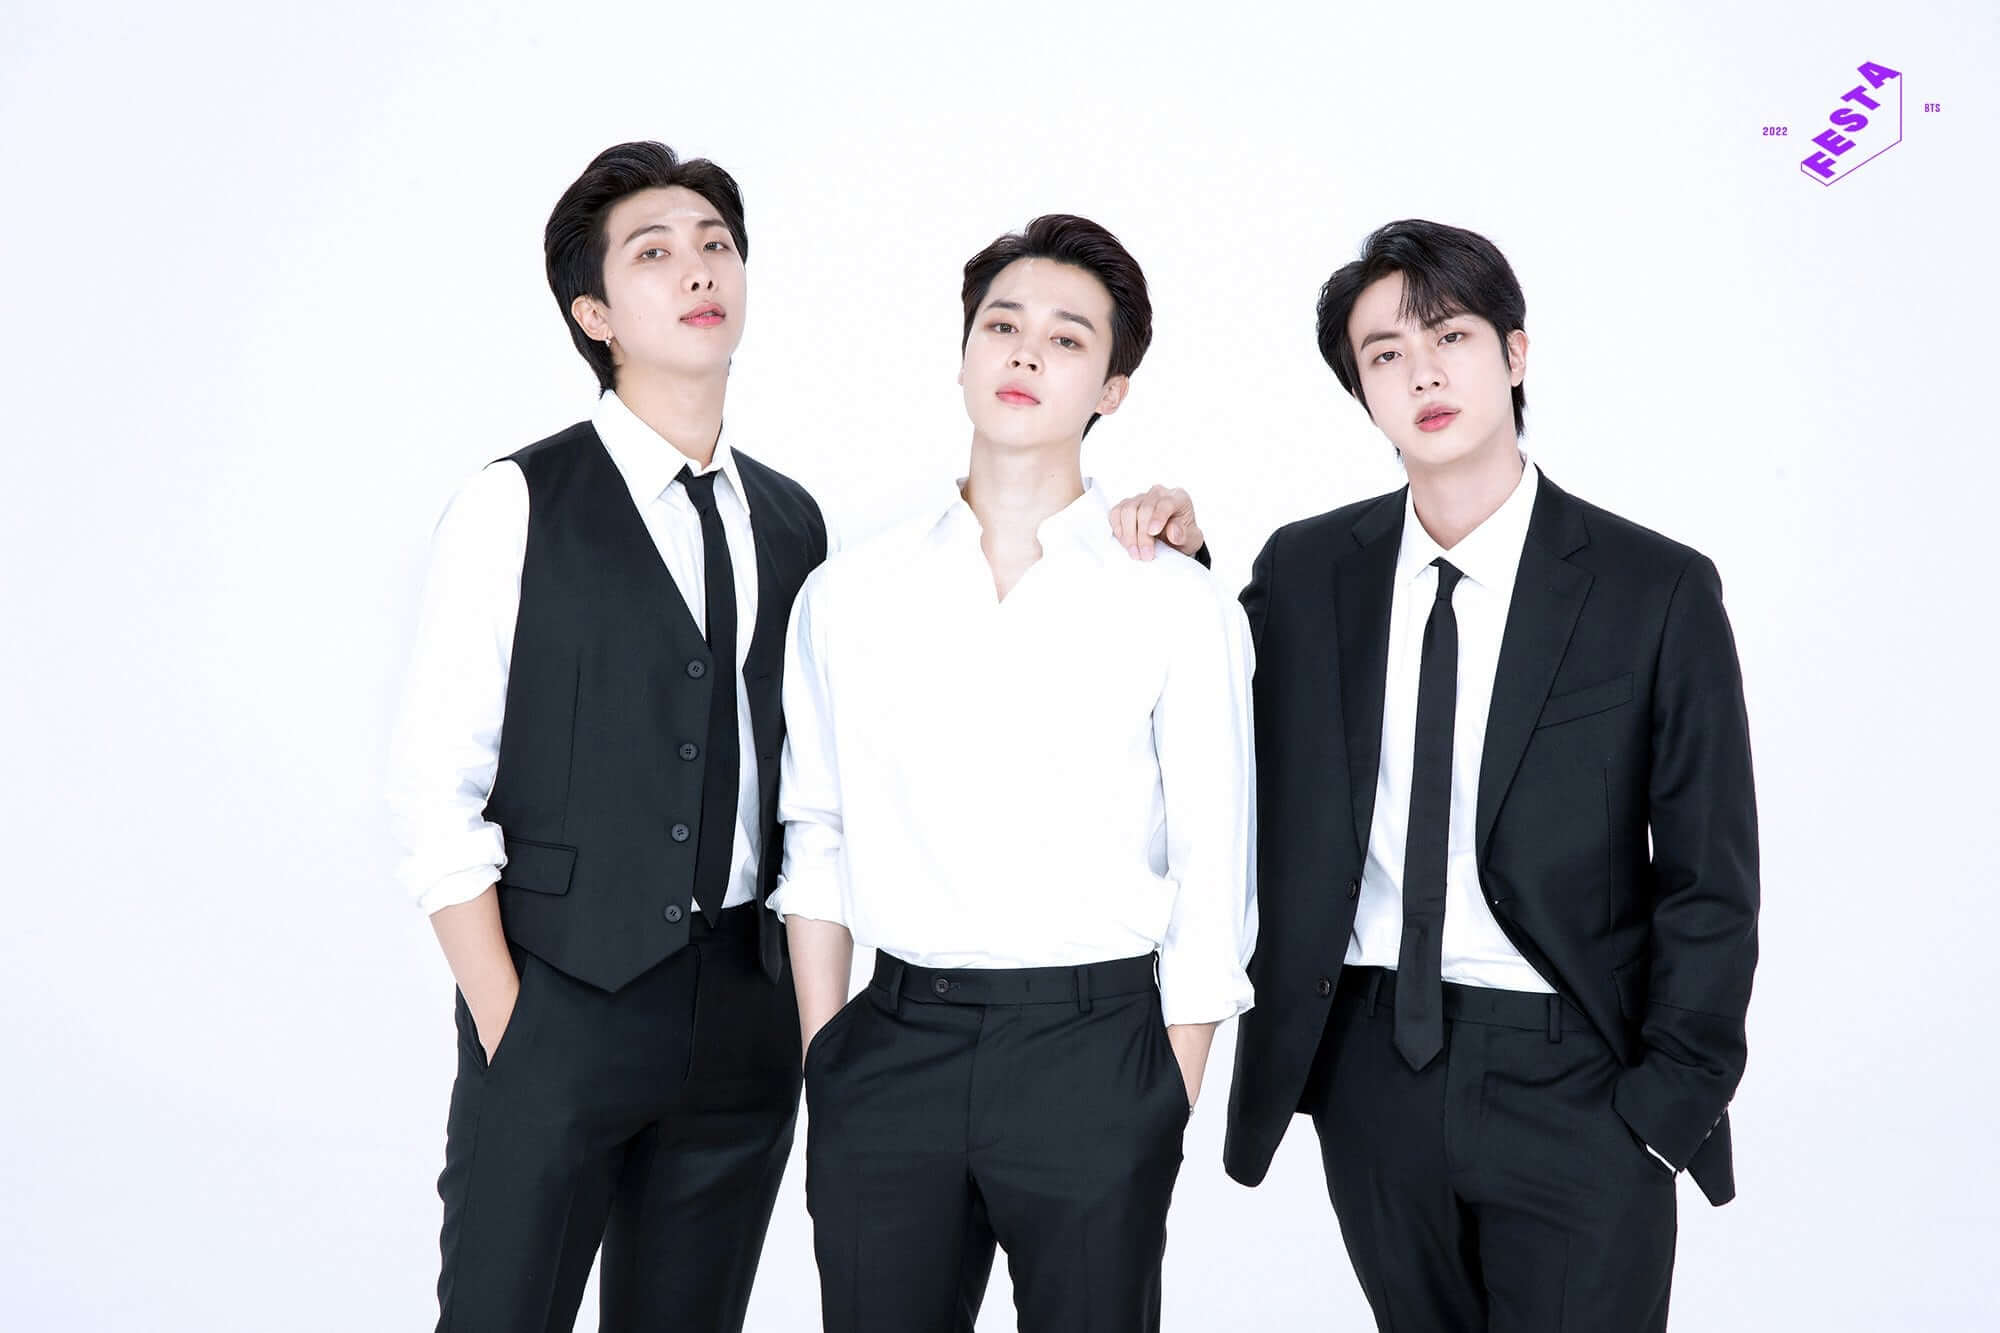 RM, Jin, Jimin sub unit